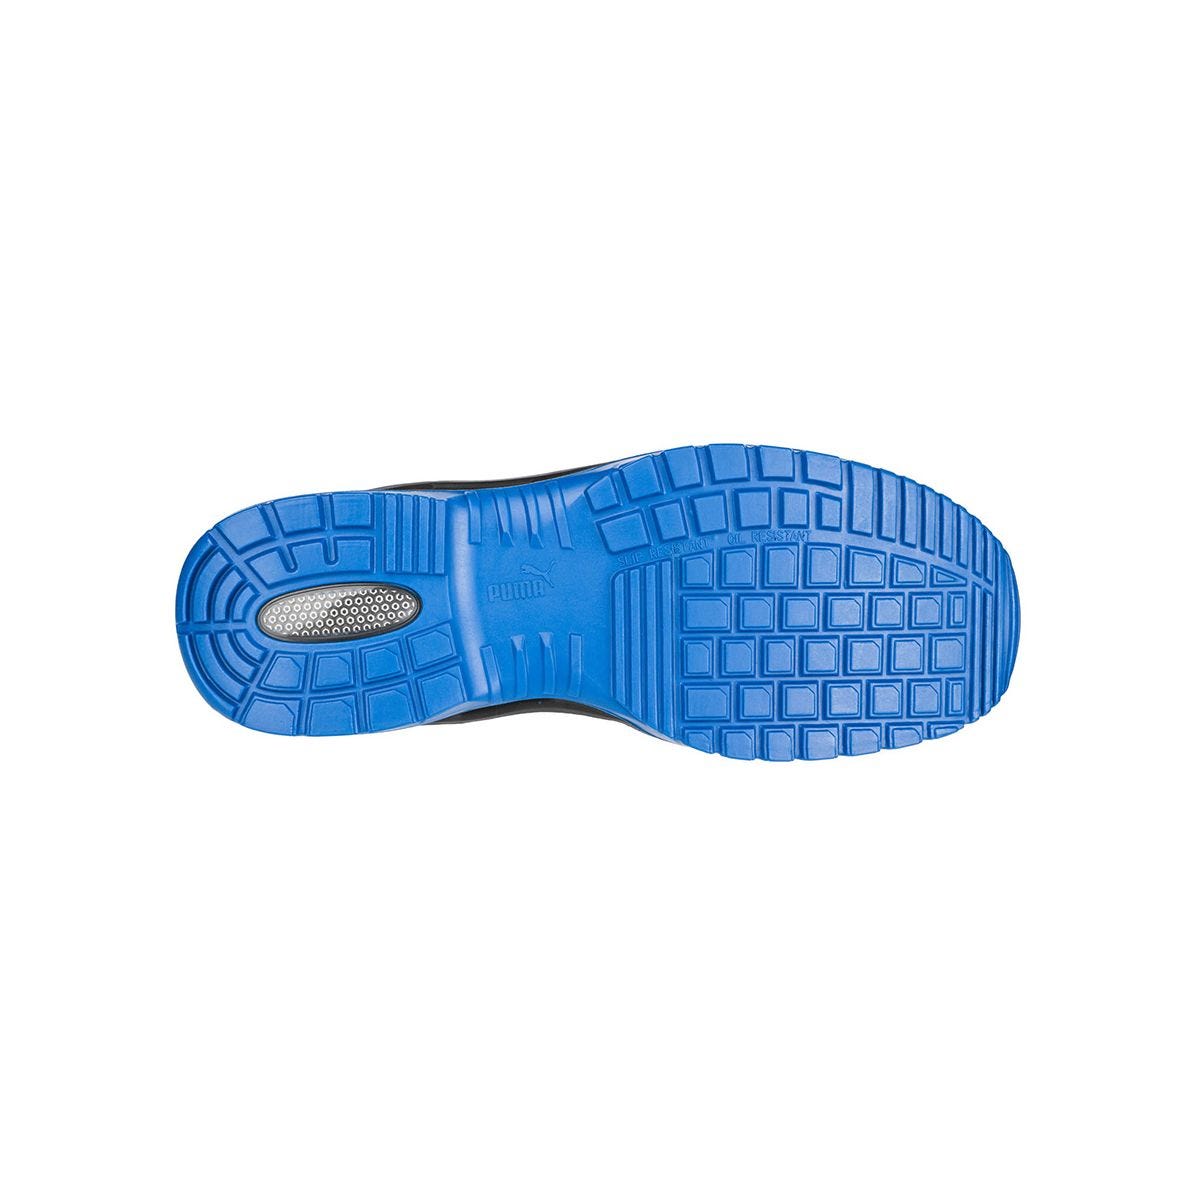 Chaussures de sécurité Argon RX low S3 ESD SRC bleu - Puma - Taille 48 3